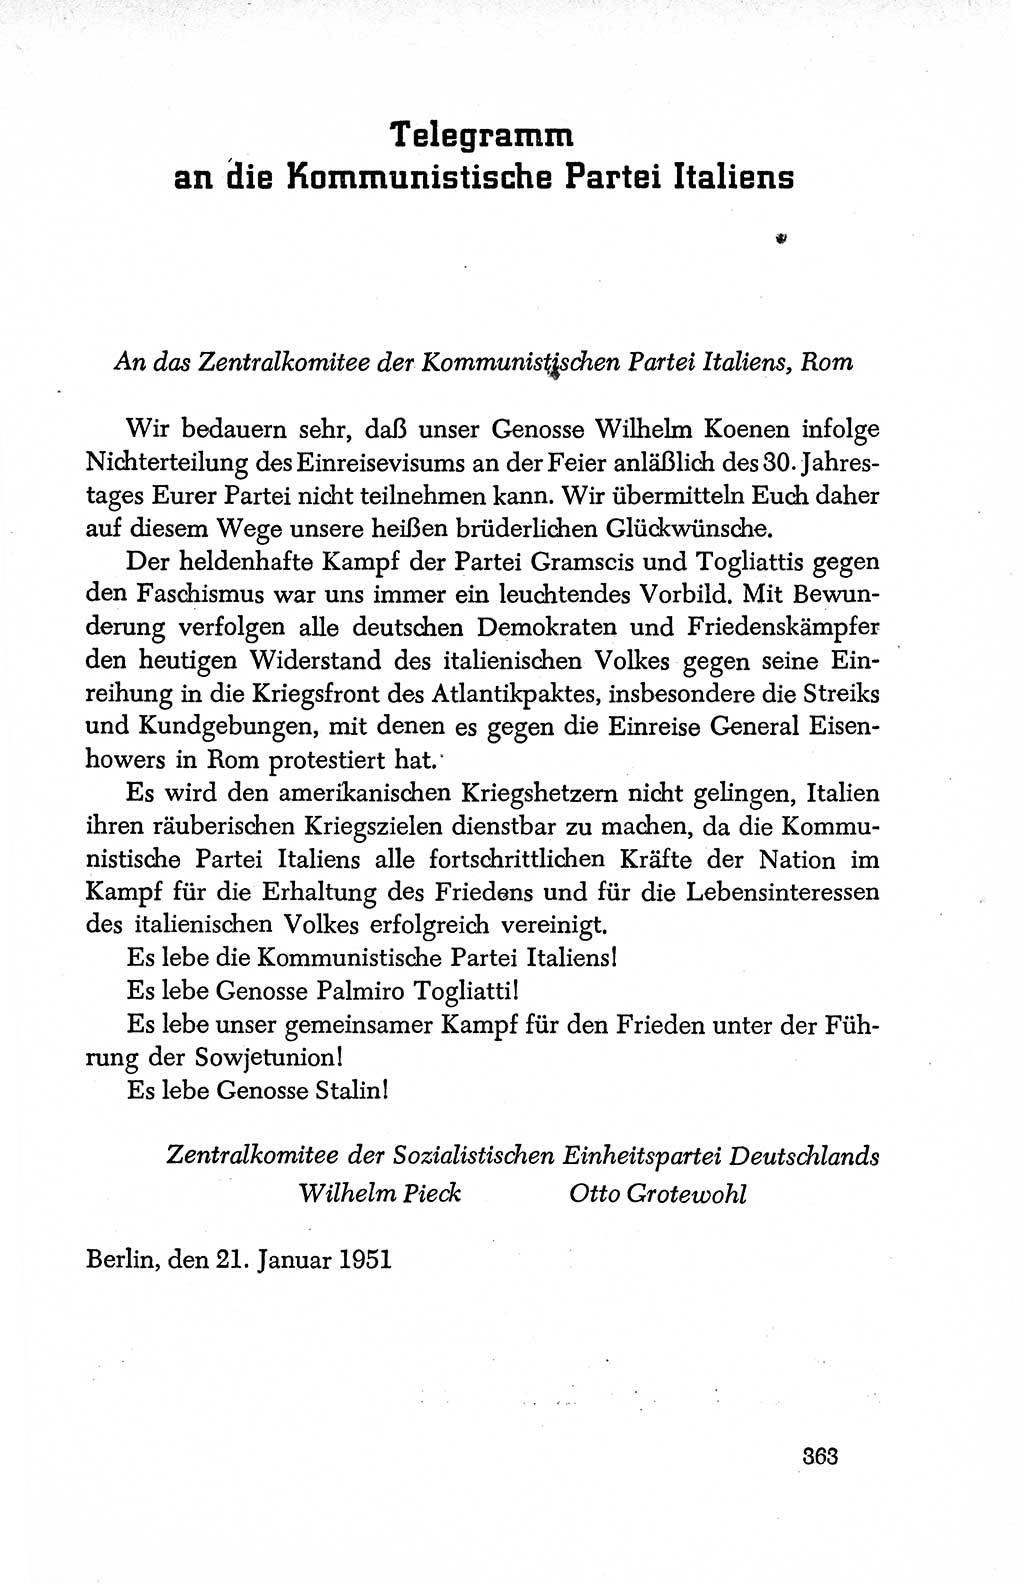 Dokumente der Sozialistischen Einheitspartei Deutschlands (SED) [Deutsche Demokratische Republik (DDR)] 1950-1952, Seite 363 (Dok. SED DDR 1950-1952, S. 363)